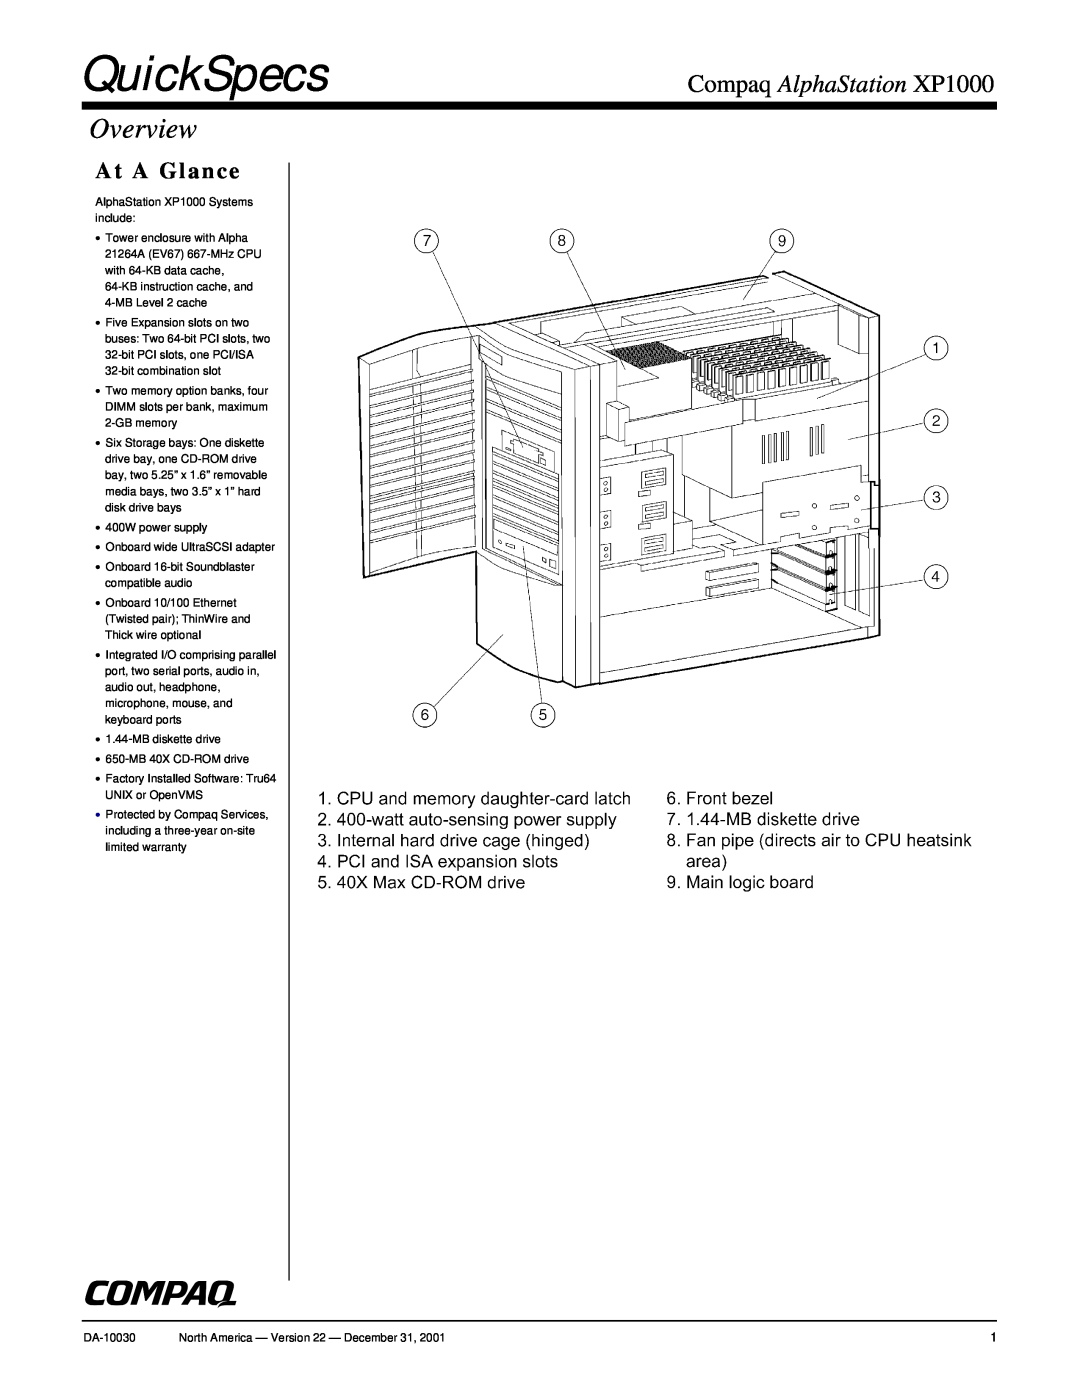 Compaq warranty QuickSpecs, Overview, Compaq AlphaStation XP1000, At A Glance 